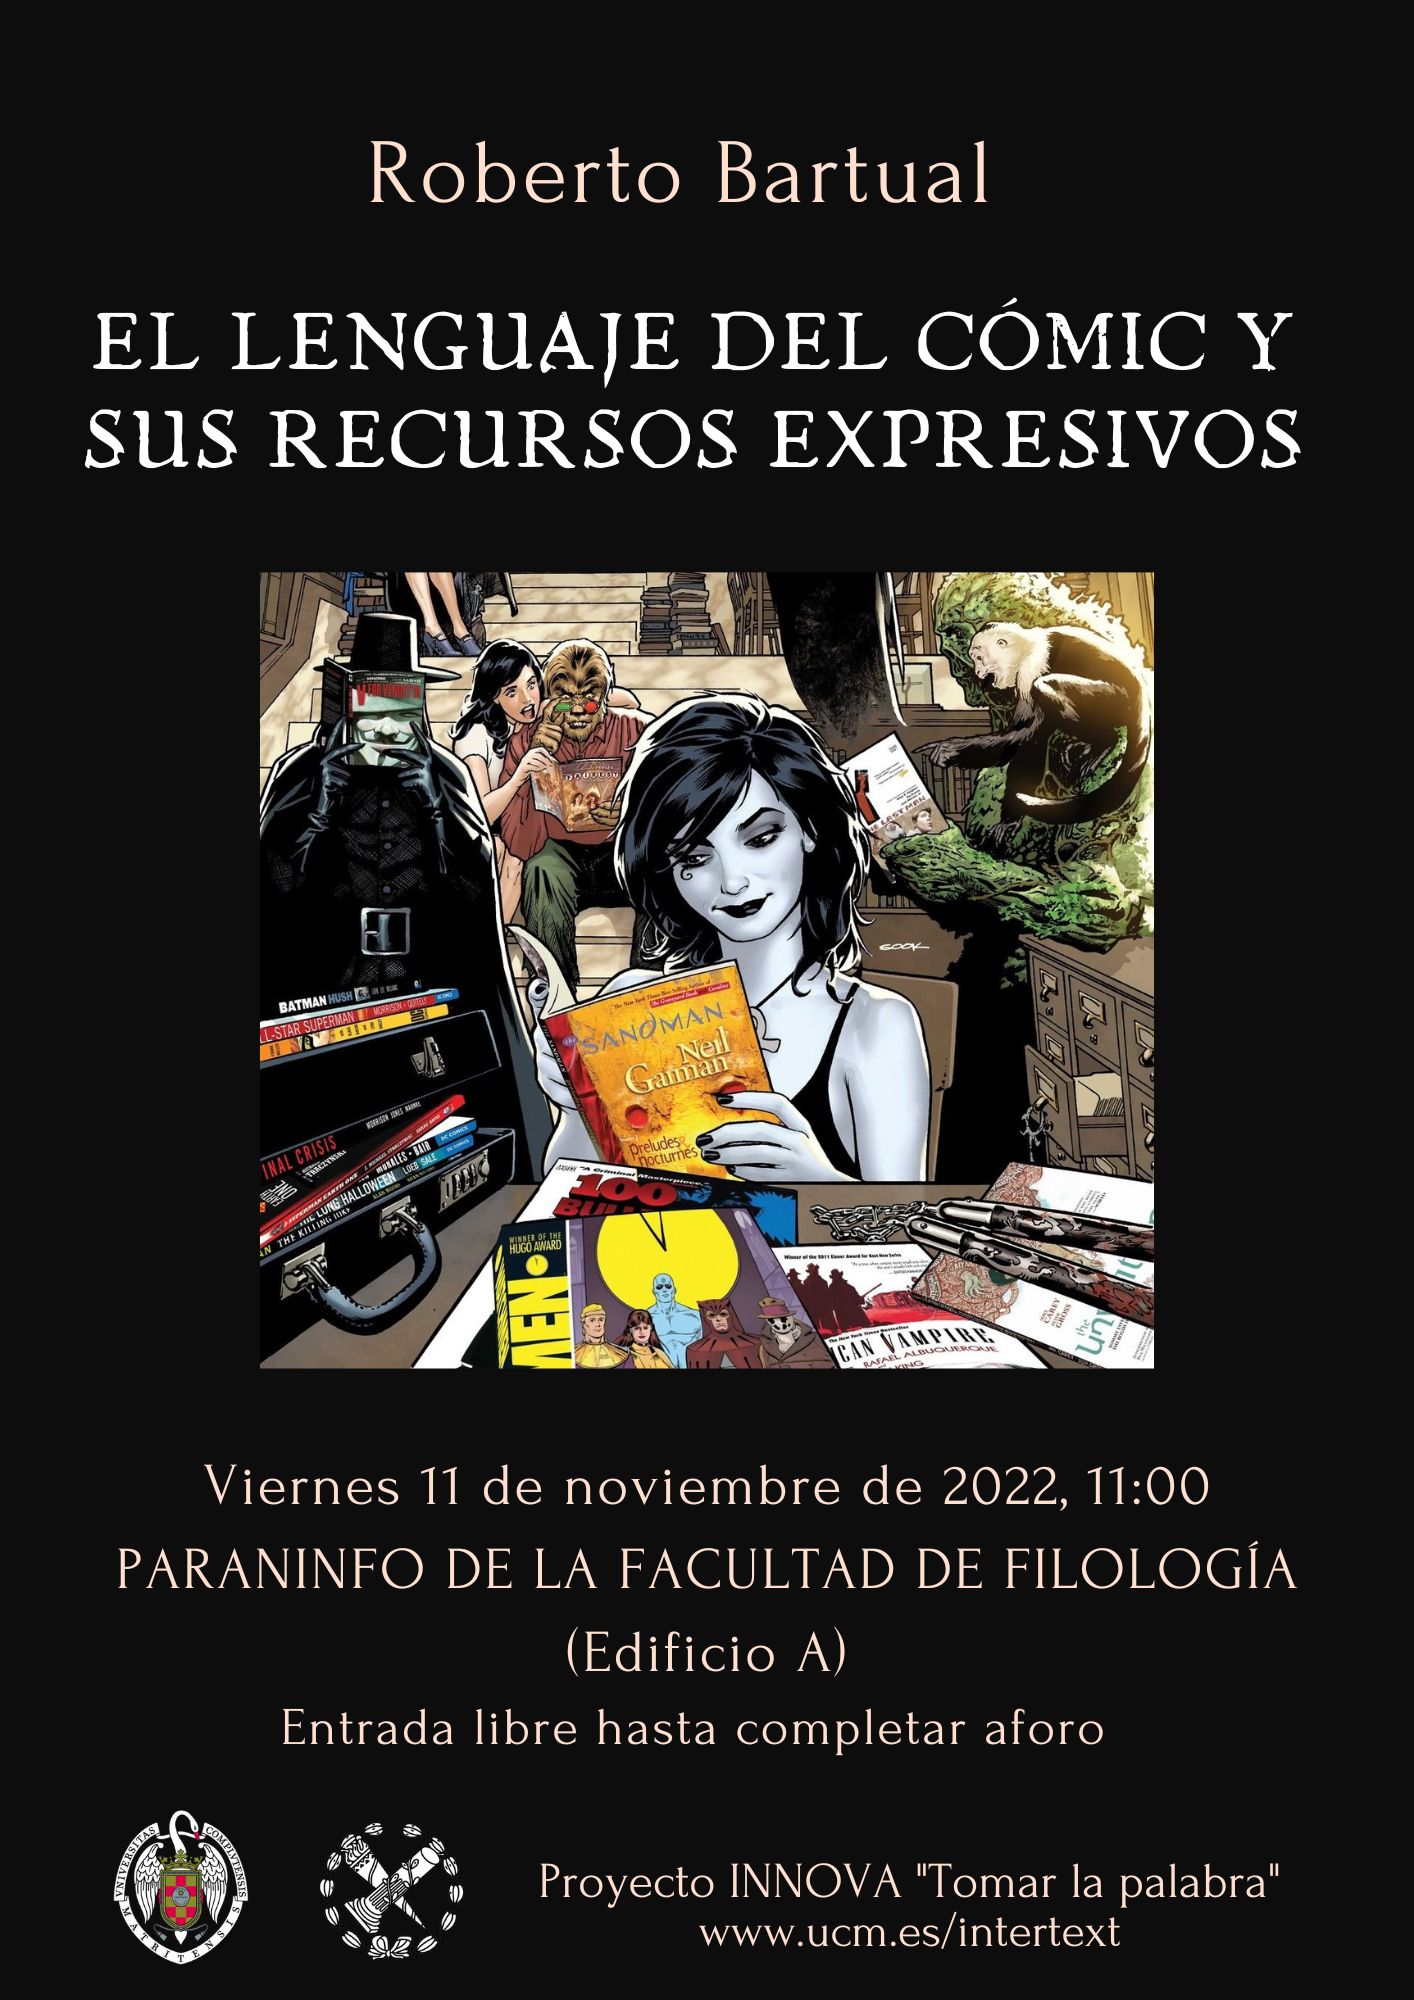 Taller "El lenguaje del cómic y sus recursos expresivos", por Roberto Bartual